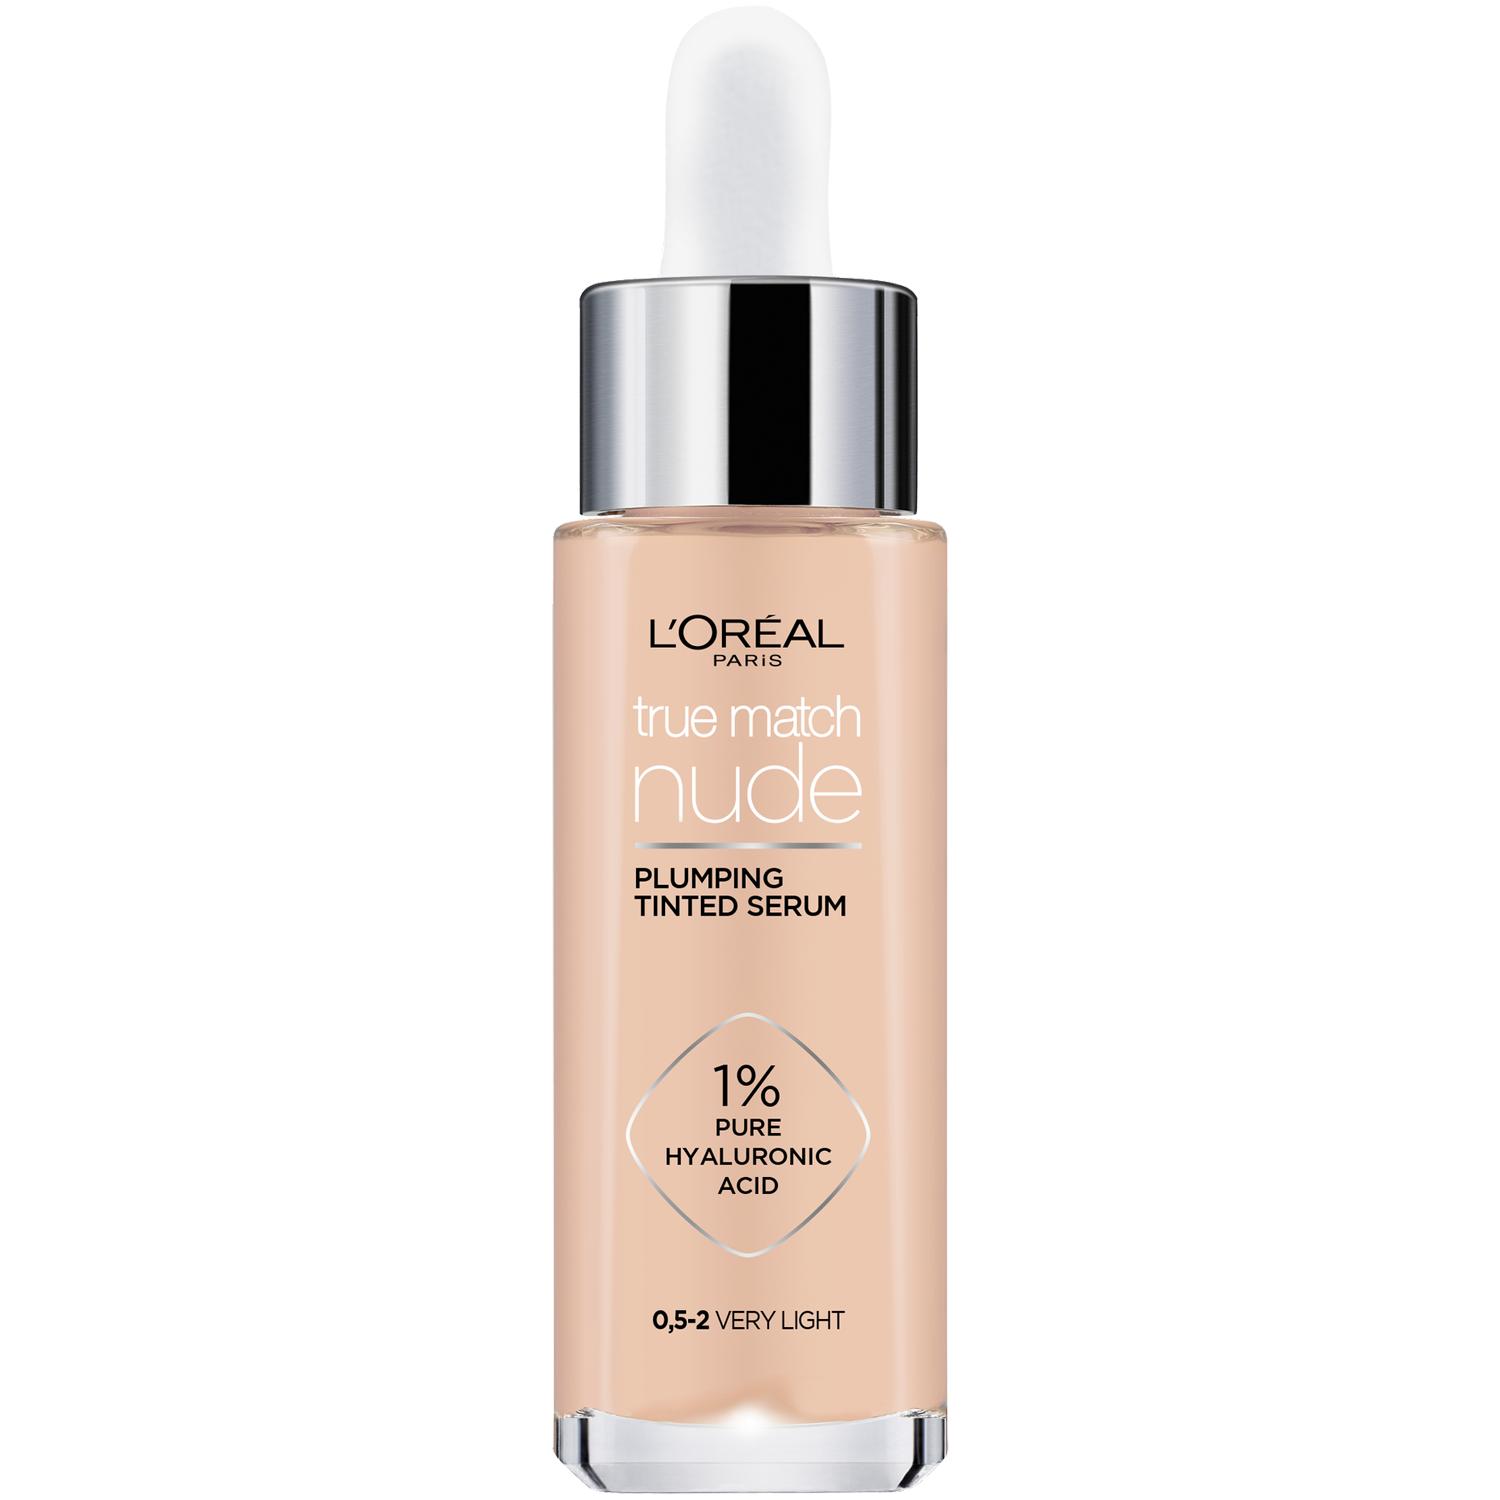 L'Oréal Paris True Match, koncentrované sérum v make-upu na obličej 0,5-2 very light, 30 ml